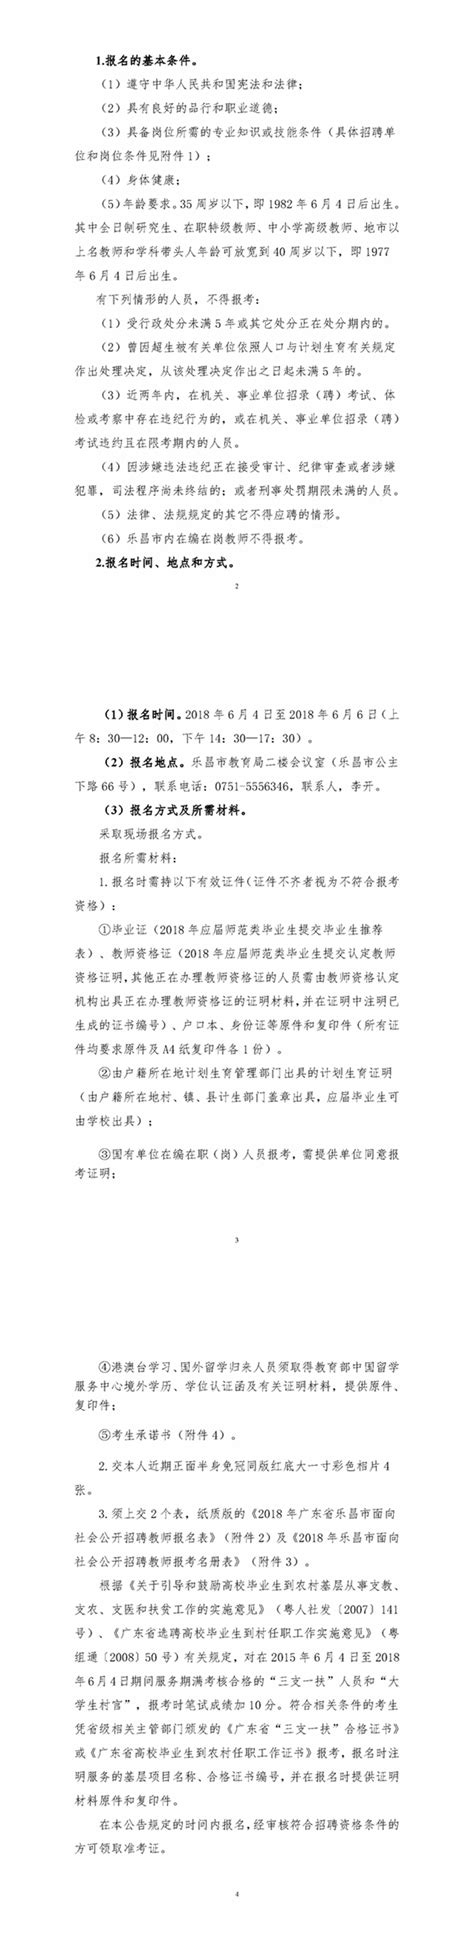 2018年韶关乐昌市中小学教师招聘公告_事业单位招聘网